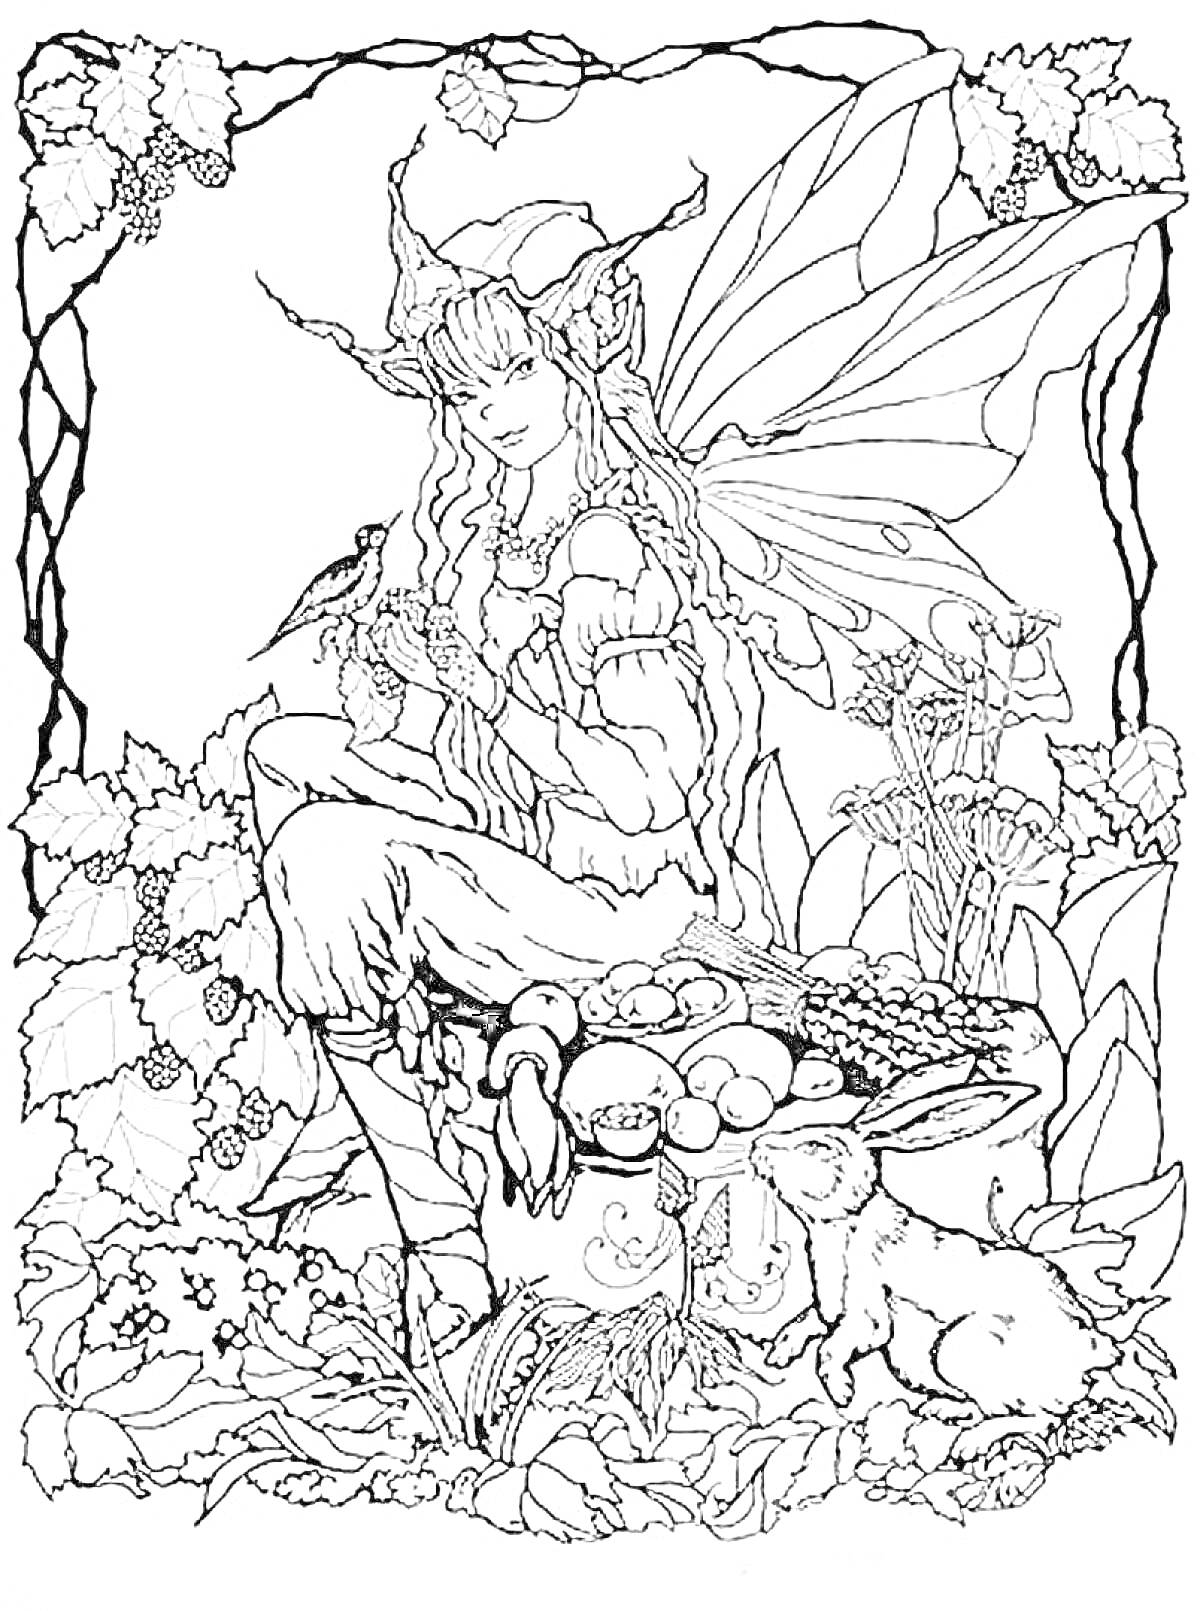 Раскраска Эльфийка с крыльями, сидящая на скале среди листьев и цветов, с птицей на руке и корзиной фруктов, рядом с кроликом